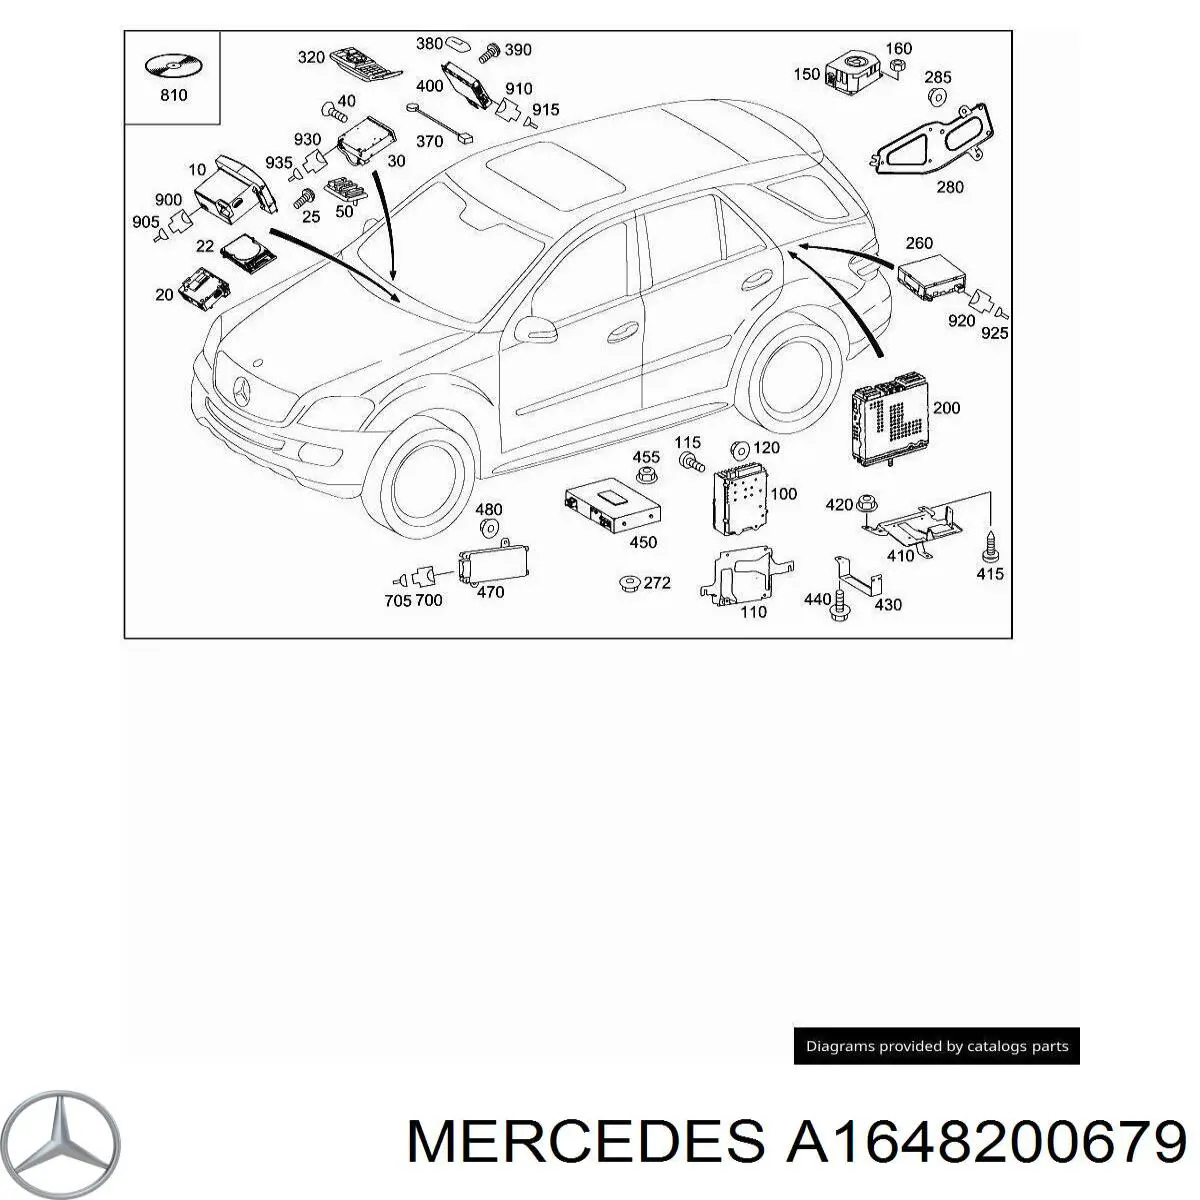 A1648703589 Mercedes дисплей многофункциональный